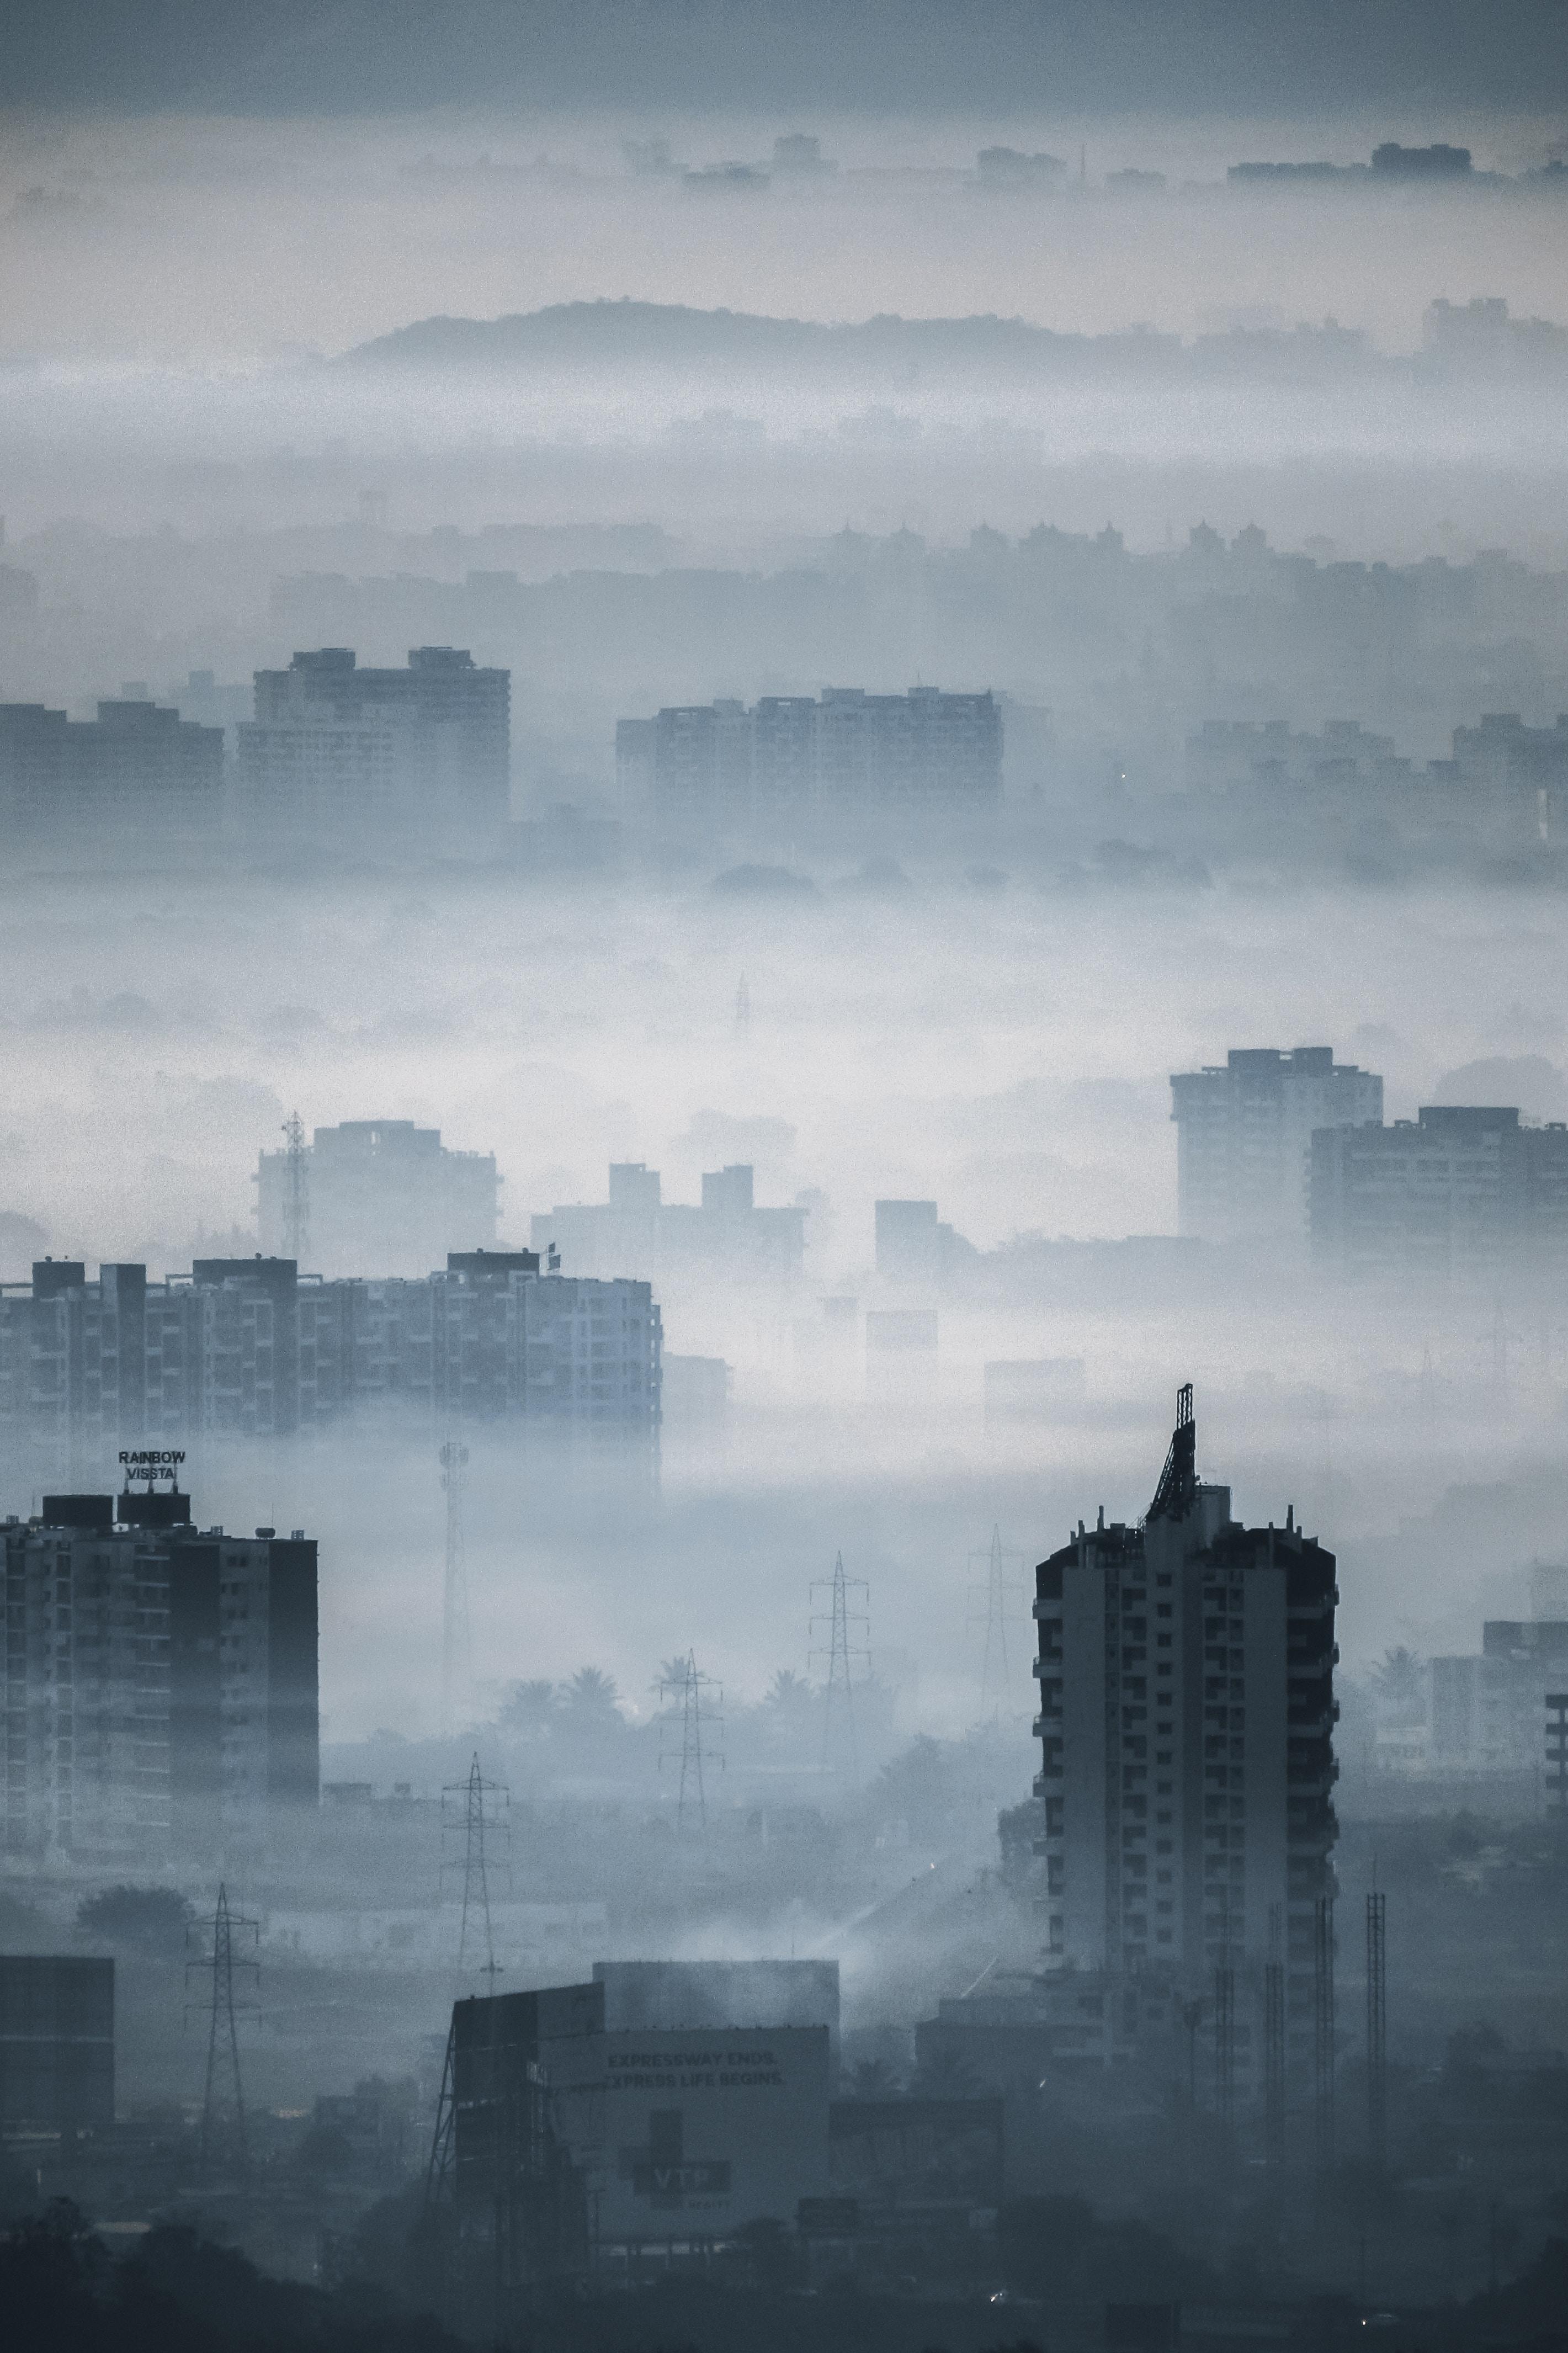 Co to jest smog i jak zagraża zdrowiu? Skutki zdrowotne smogu, czyli jak zanieczyszczenie powietrza wpływa na zdrowie. Co poza smogiem wpływa na nasze zdrowie psychiczne?